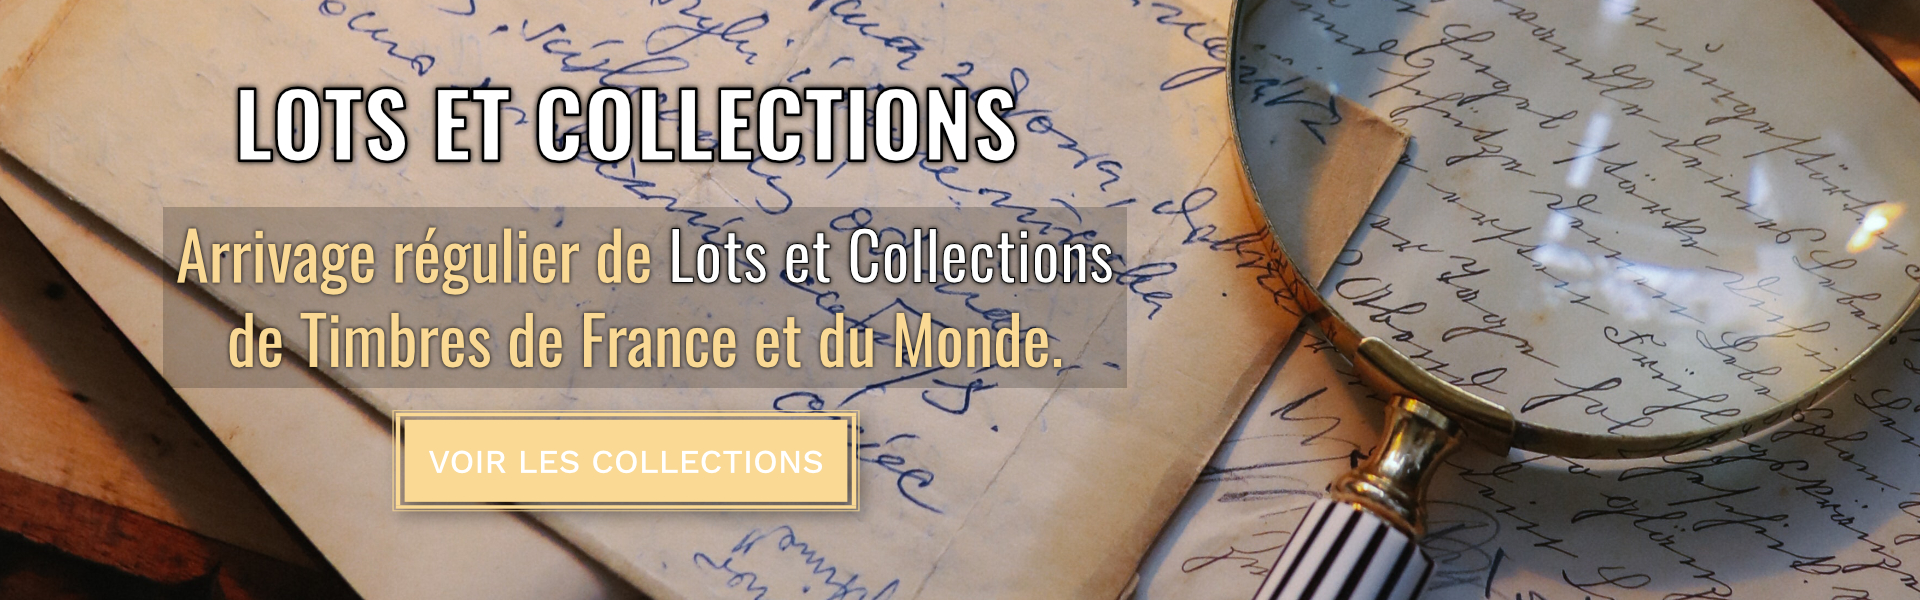 Lots et collections de timbres de France, monde en stock.